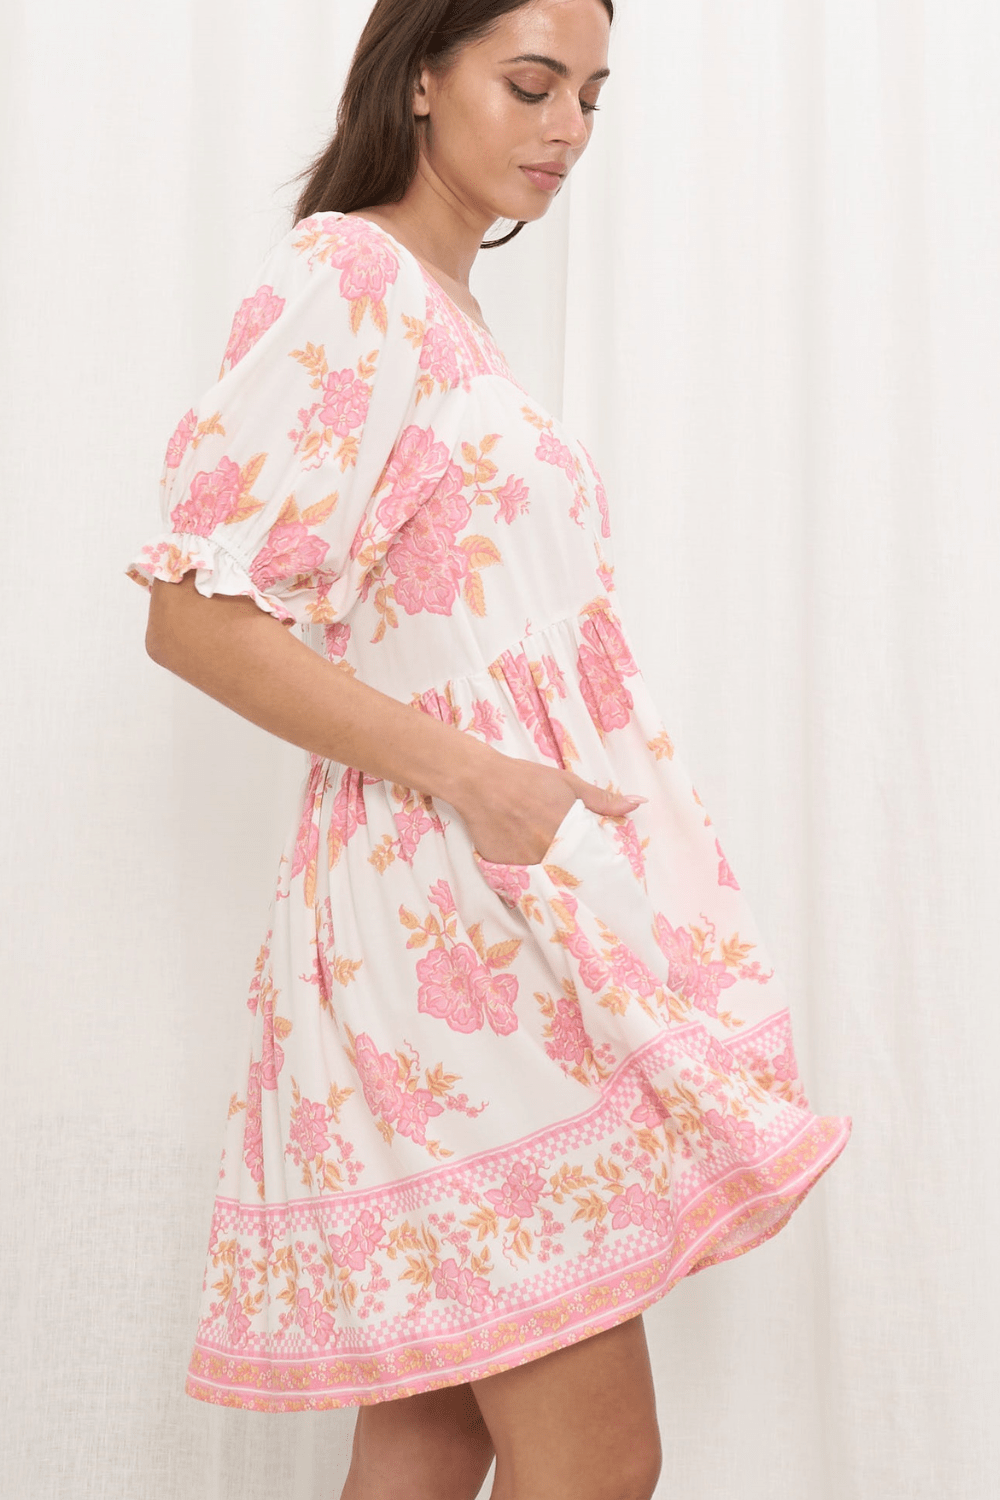 Lola Mini Dress - Pink Floral